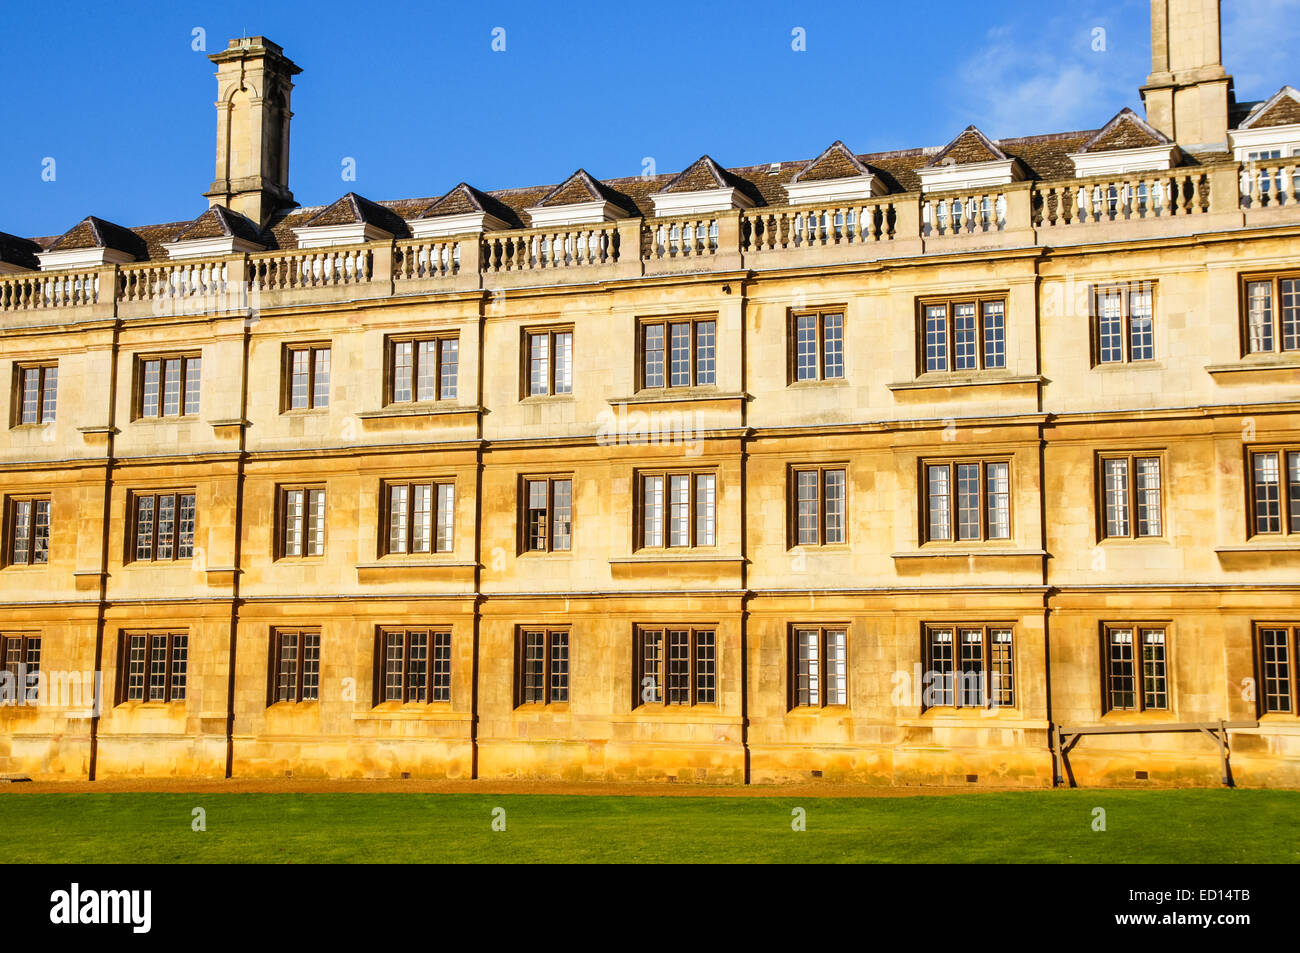 L'Université de Cambridge, windows de Clare College, Cambridge Cambridgeshire Angleterre Royaume-Uni UK Banque D'Images